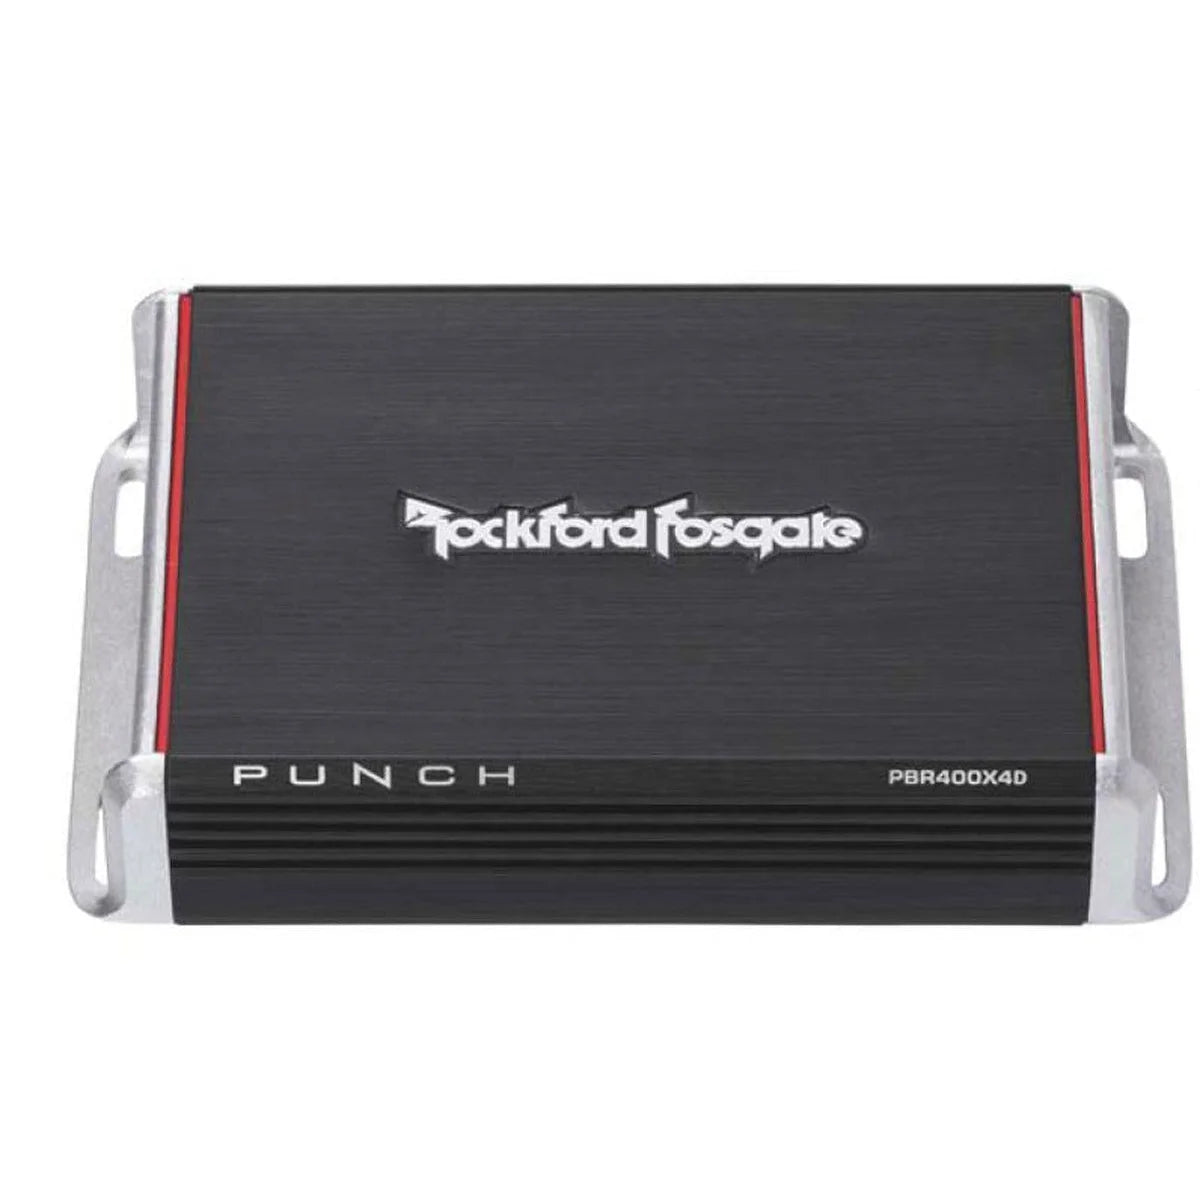 ROCKFORD FOSGATE Rockford Fosgate Verstärker Punch Verstärker 4-Kanal PBR400x4D4-Kanal